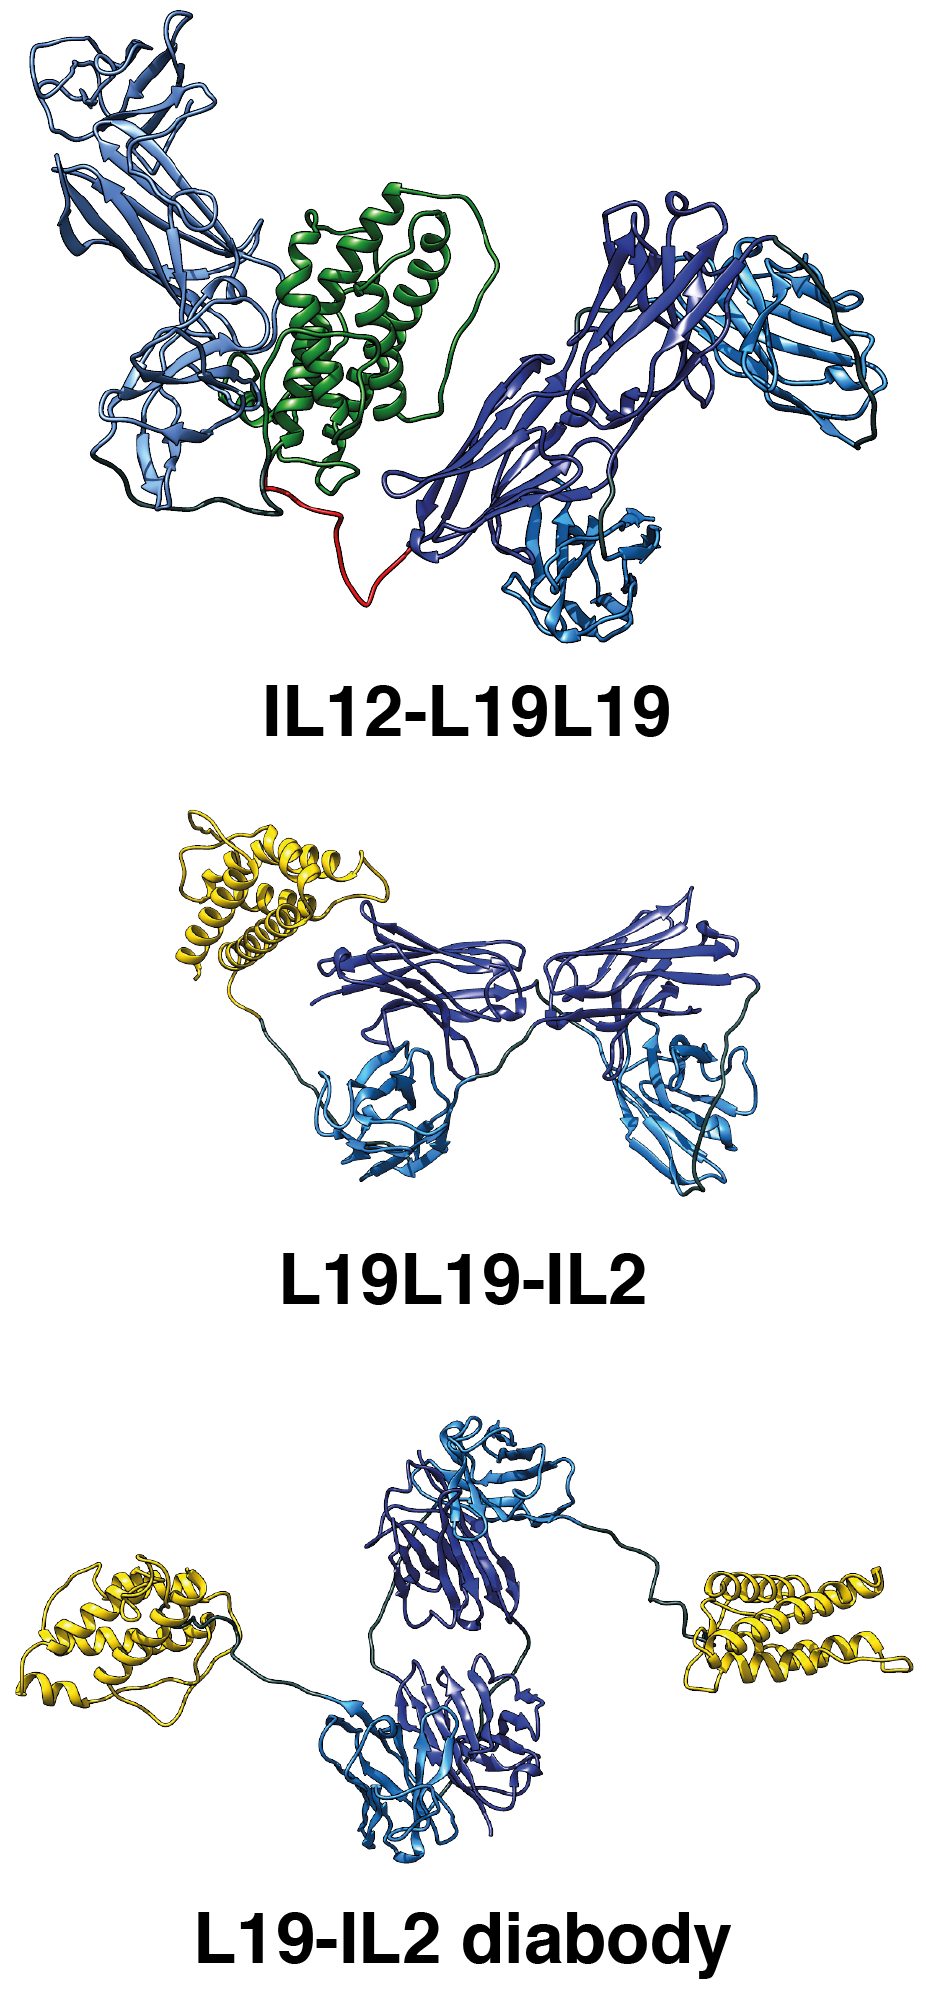 Cartoon representation of the molecular models of L19-IL2, L19L19-IL2 and IL12-L19L19 immunocytokines based on SEC-SAXS data